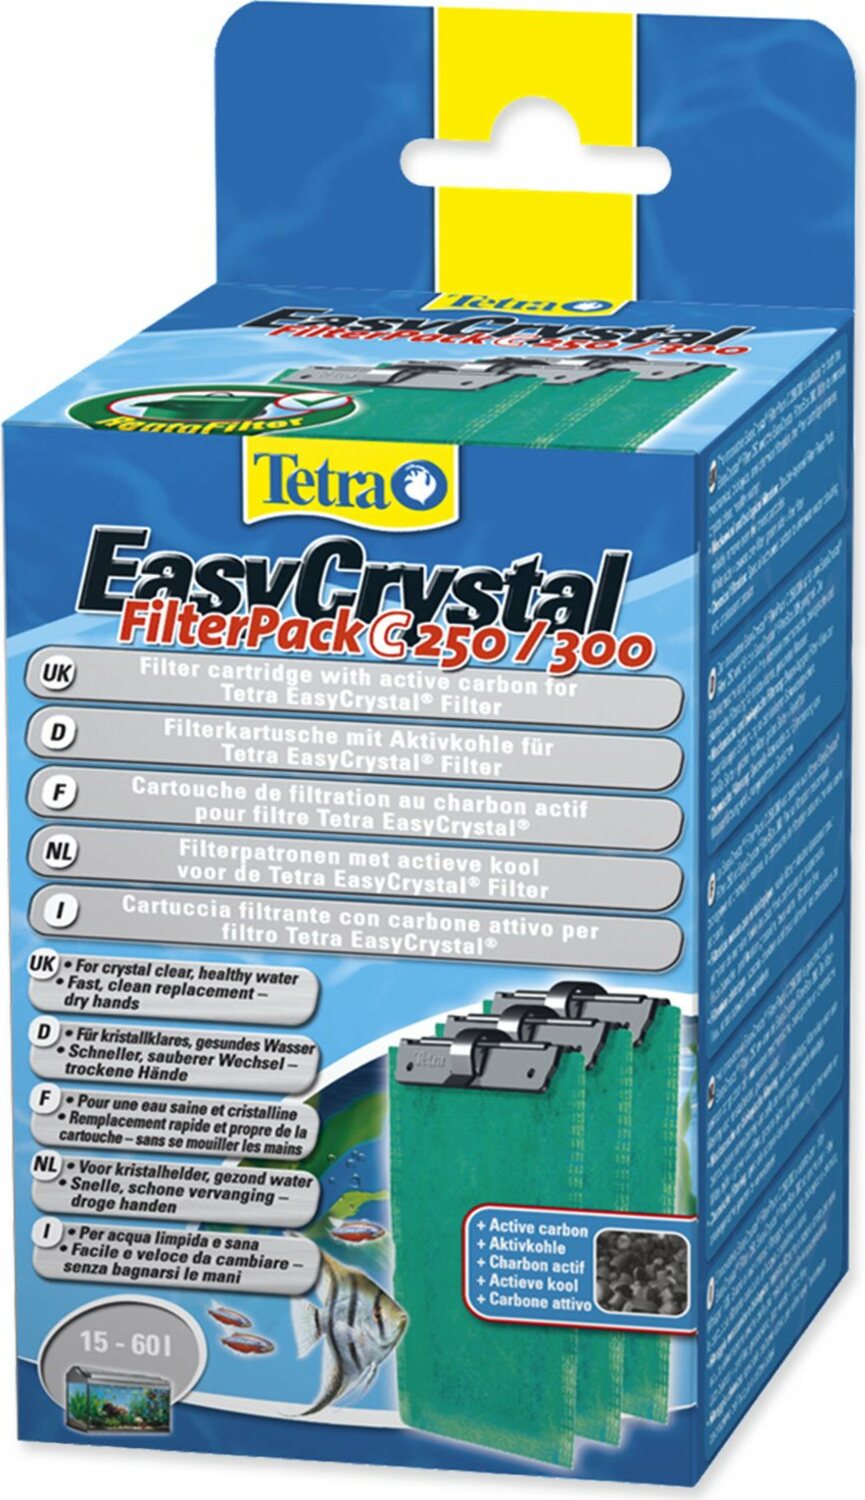 Náplň Tetra Easy Crystal aktivní uhlí 250/300/Silhouette